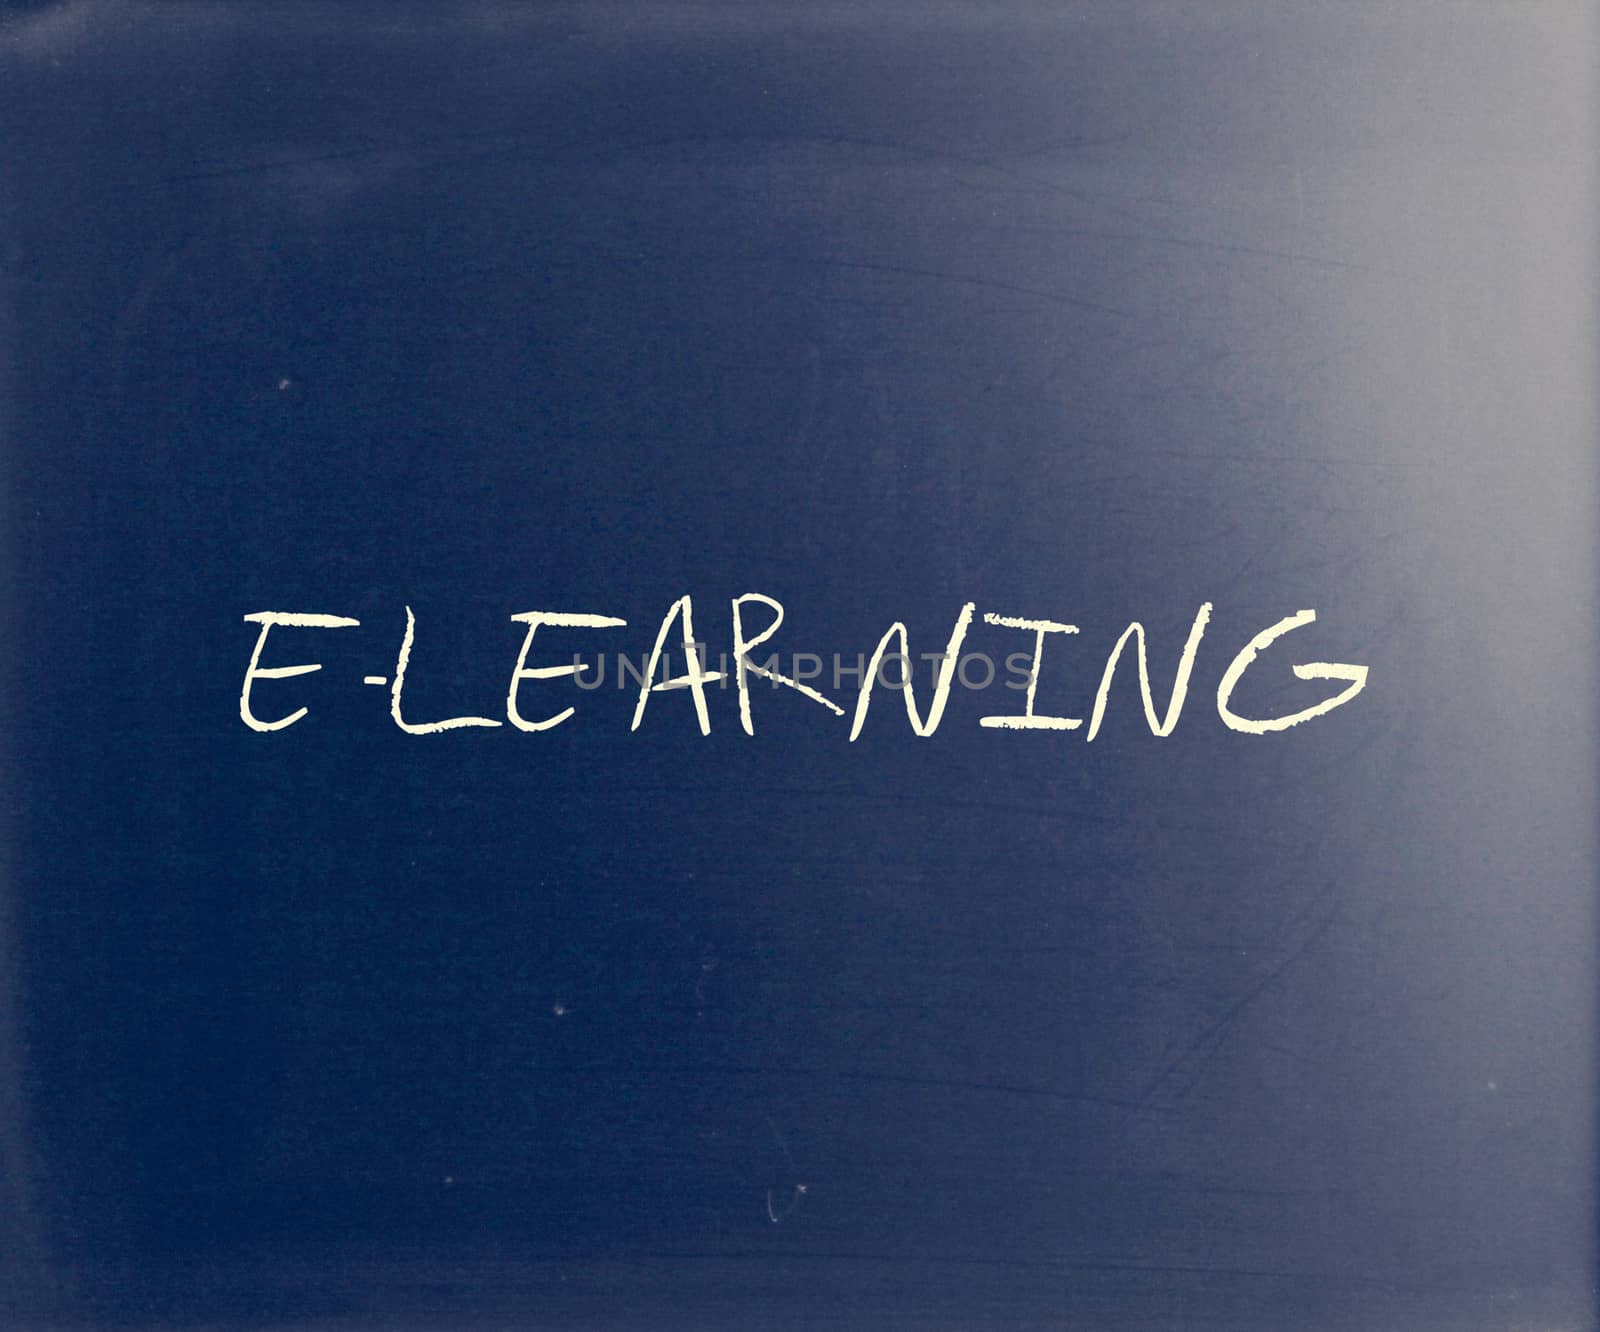 "E-learning" handwritten with white chalk on a blackboard.